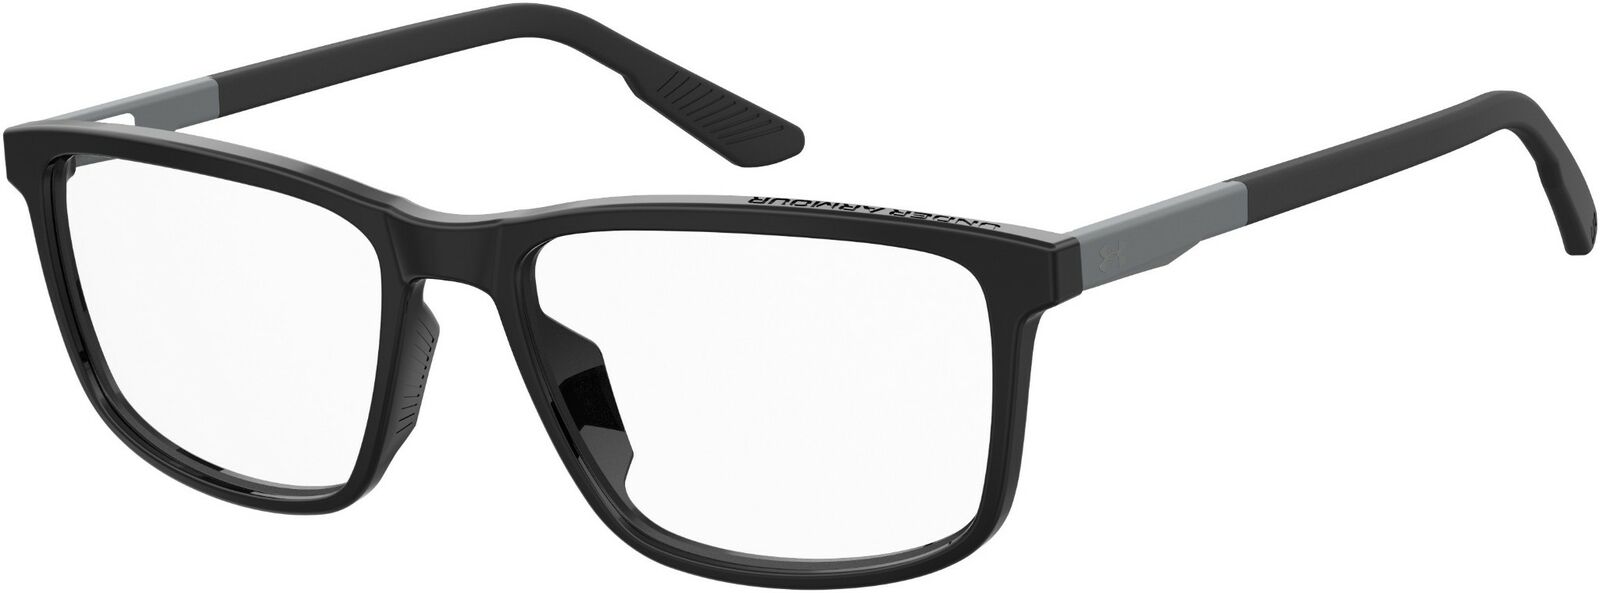 Under Armour Ua 5008/G 0807 Black Gray Rectangle Men's Eyeglasses